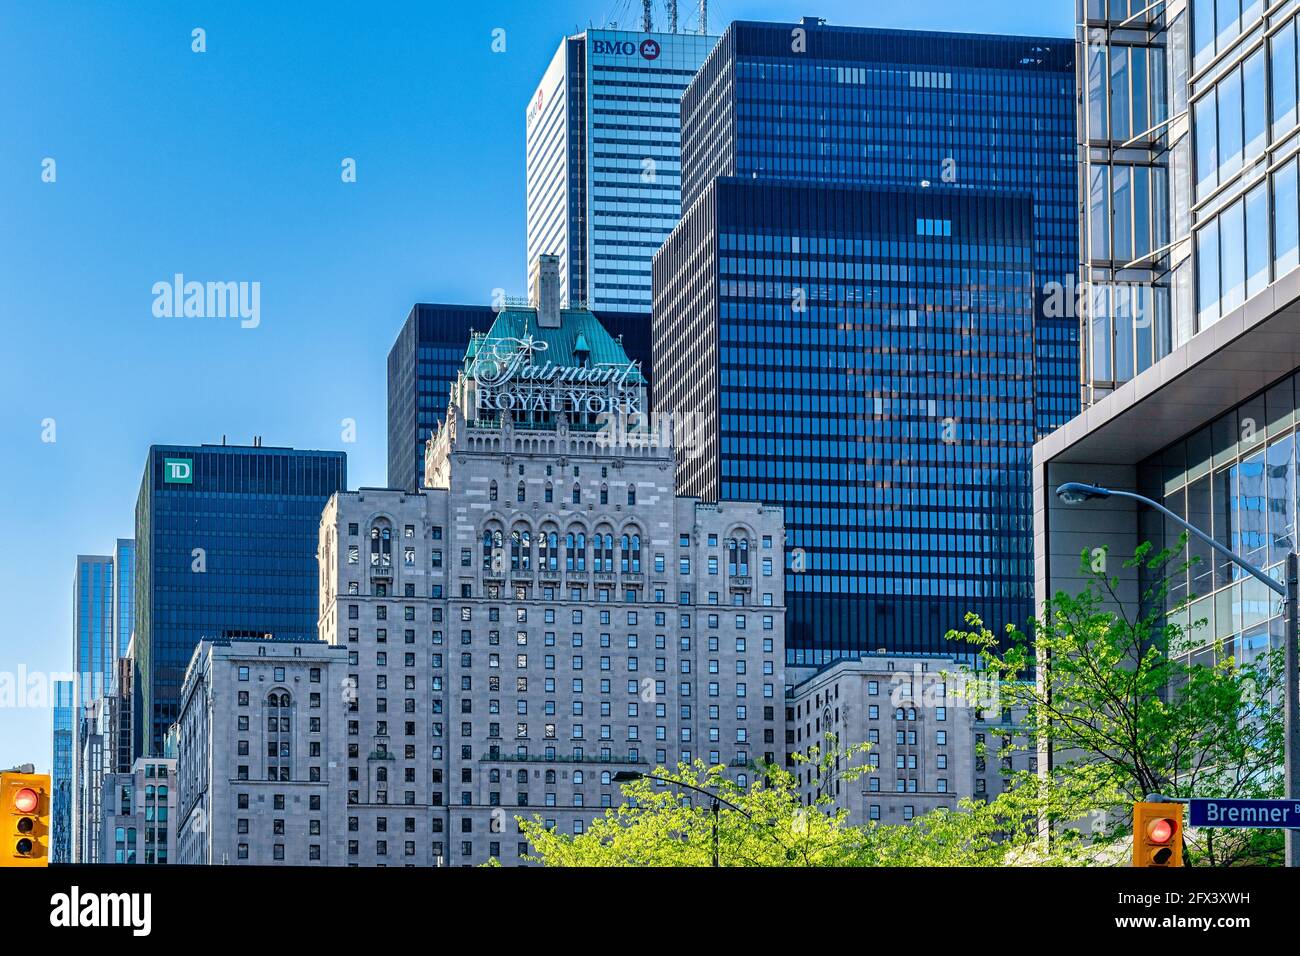 Contraste architectural de l'hôtel Fairmont Royal York et des gratte-ciels du quartier financier de Toronto, au Canada. Banque D'Images